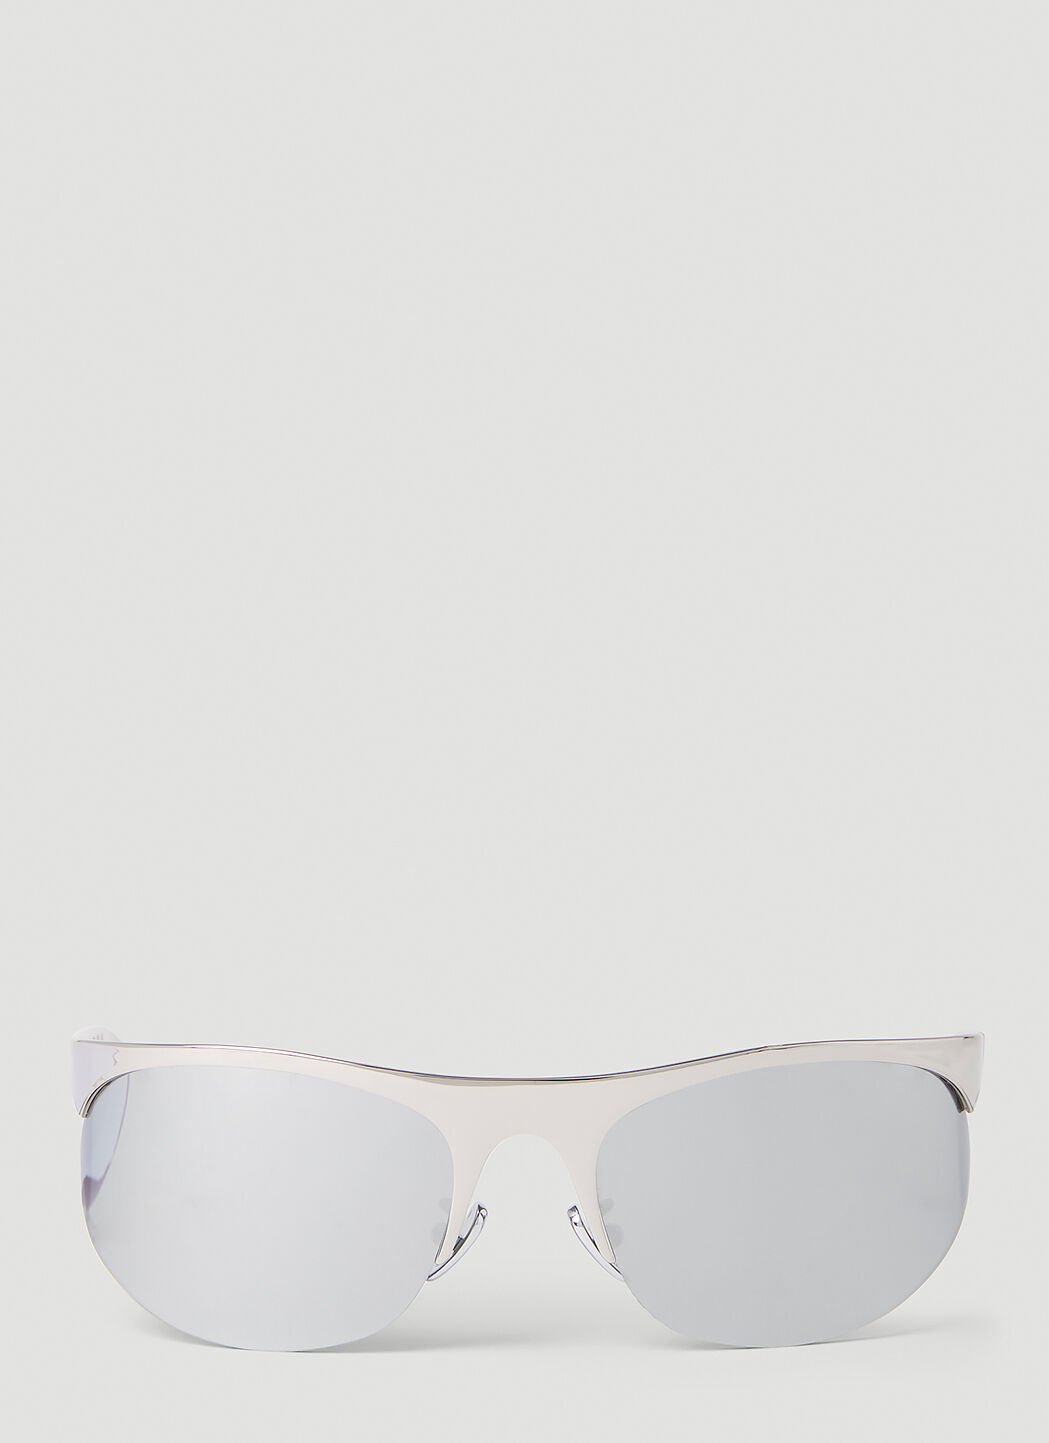 Marni Salar de Uyuni Sunglasses Blue mni0251028